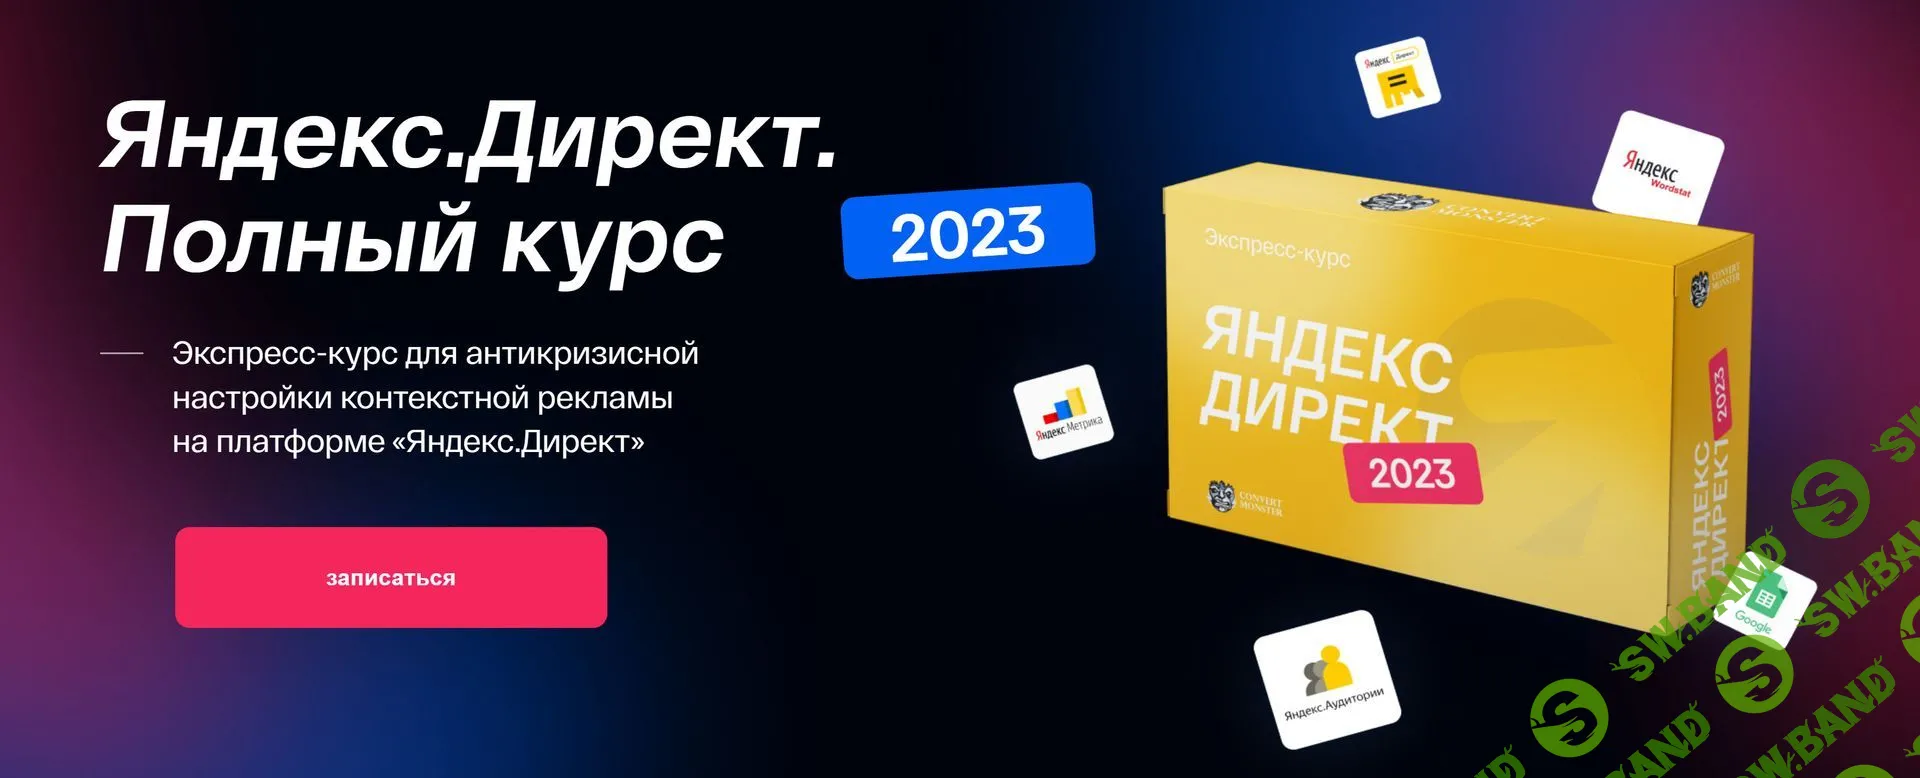 [Convert Monster] Яндекс.Директ. Полный курс (2023)